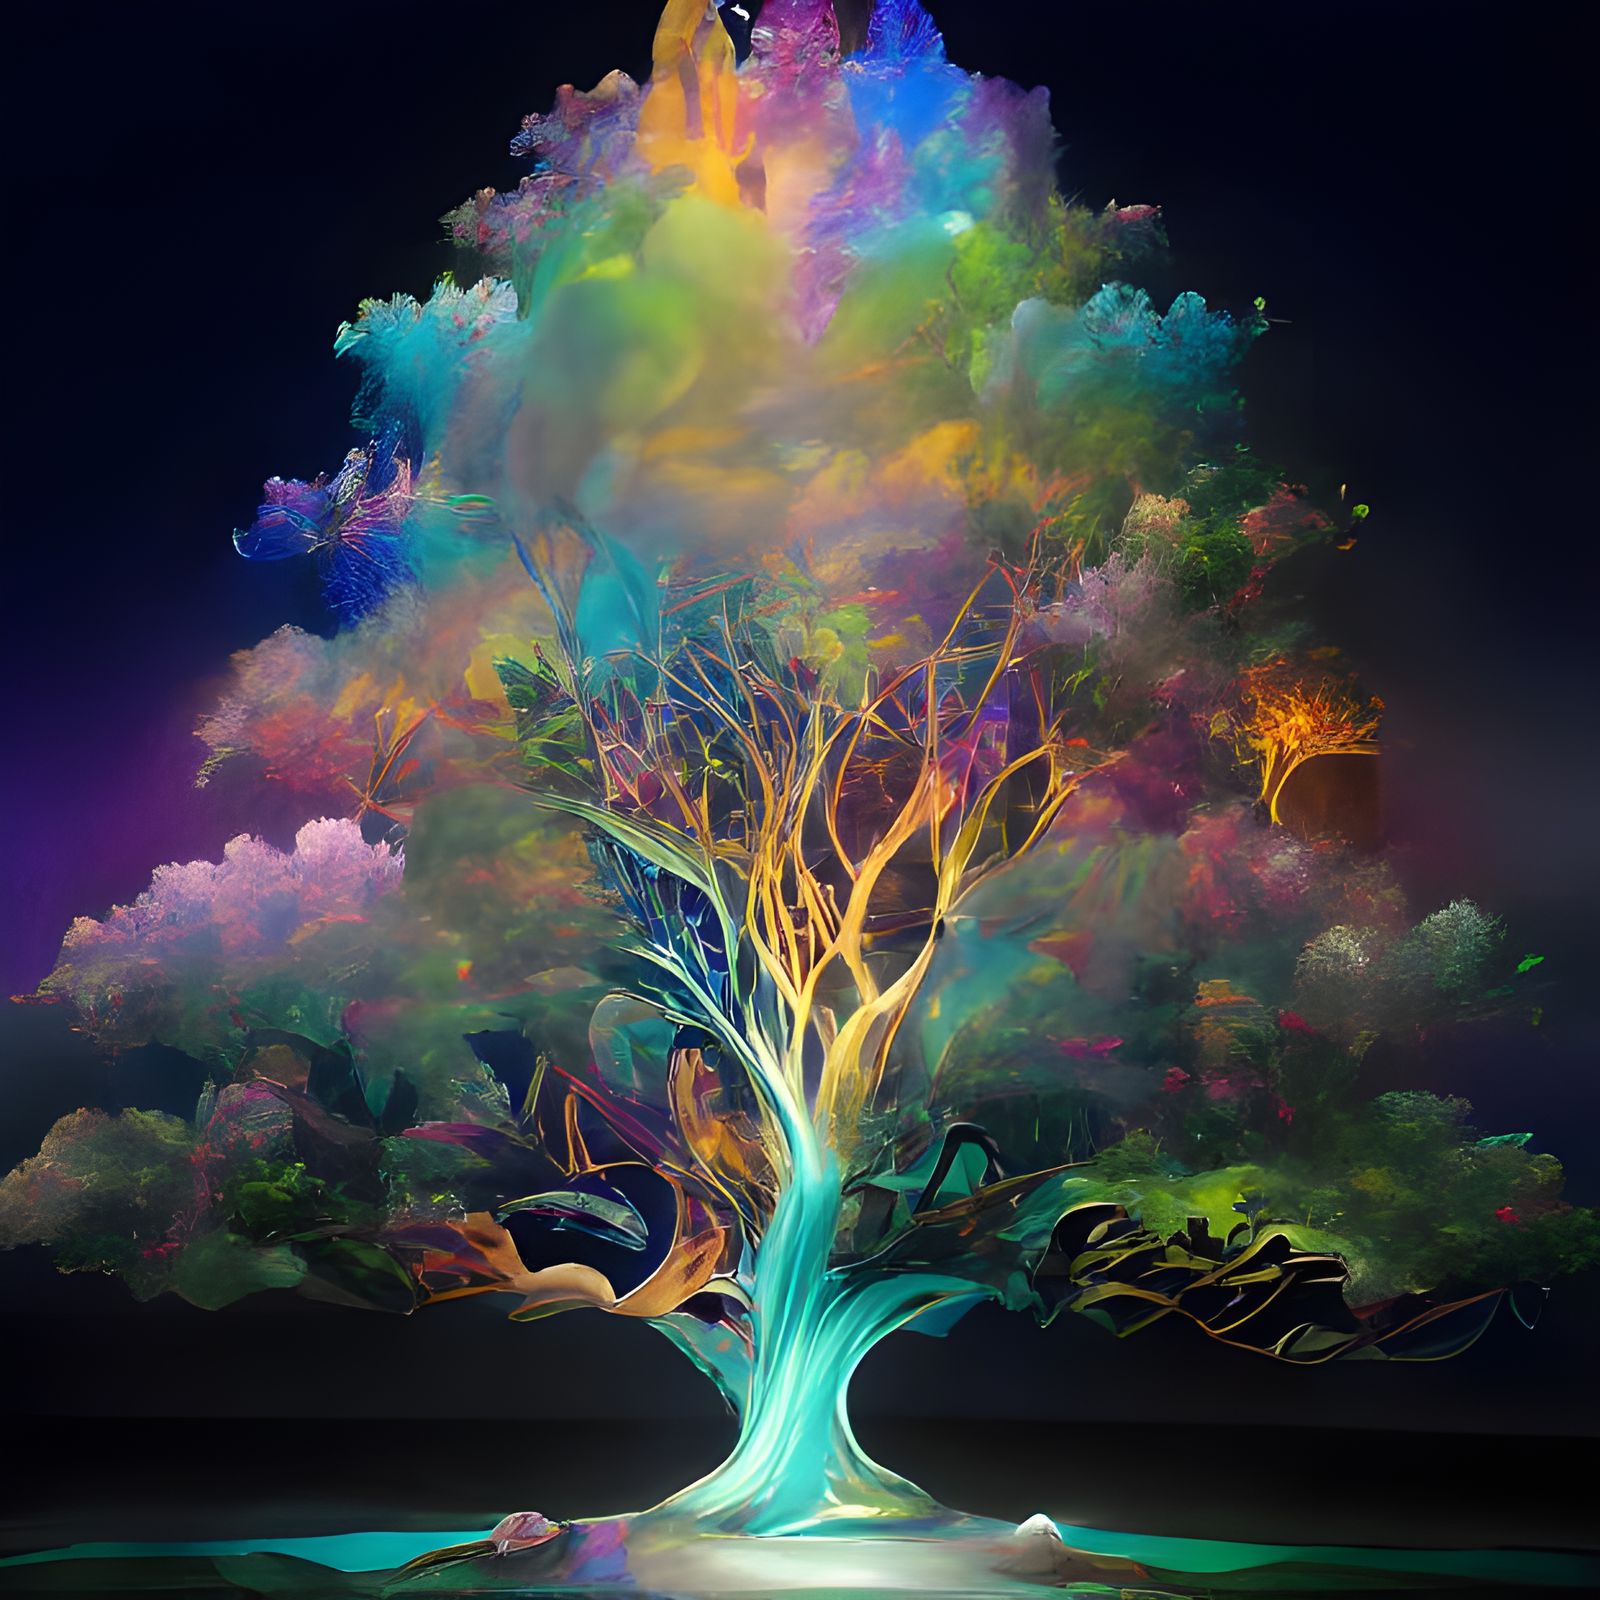 Dreams of a tree